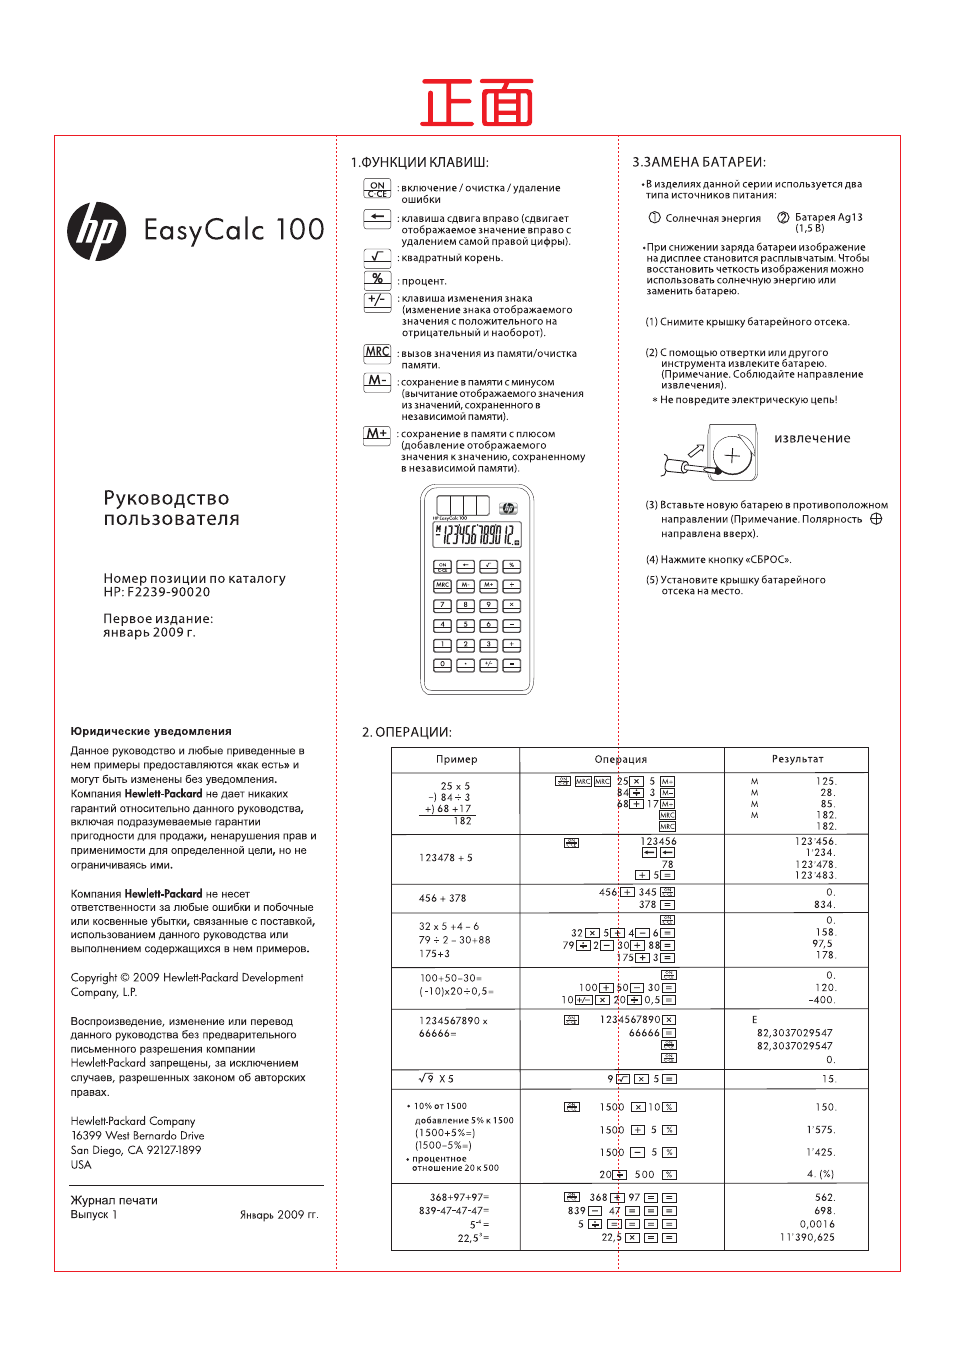 Инструкция по эксплуатации HP EasyCalc 100 | 2 страницы